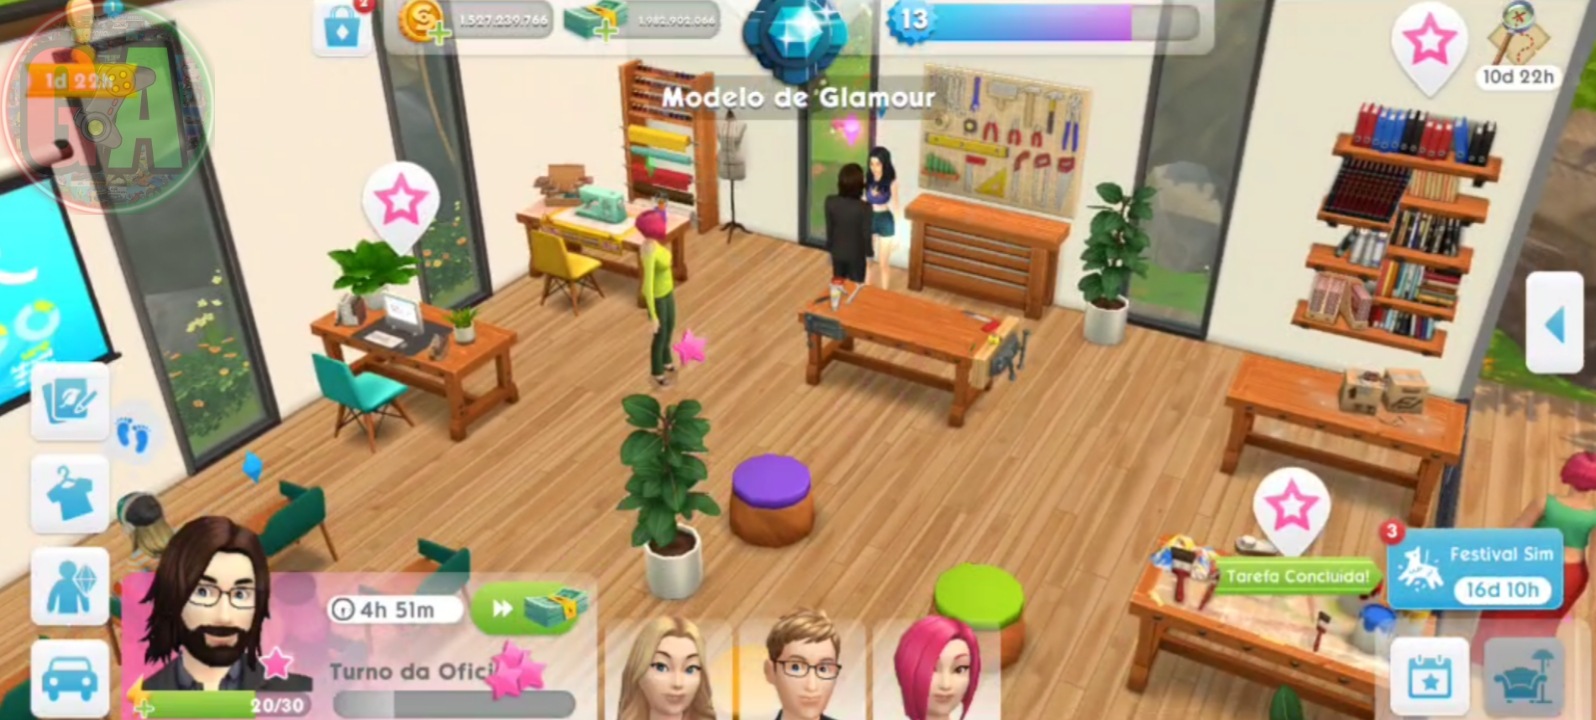 The Sims Mobile PT-Brasil, Oi gente, queria muito ter dinheiro infinito no The  Sims mobile